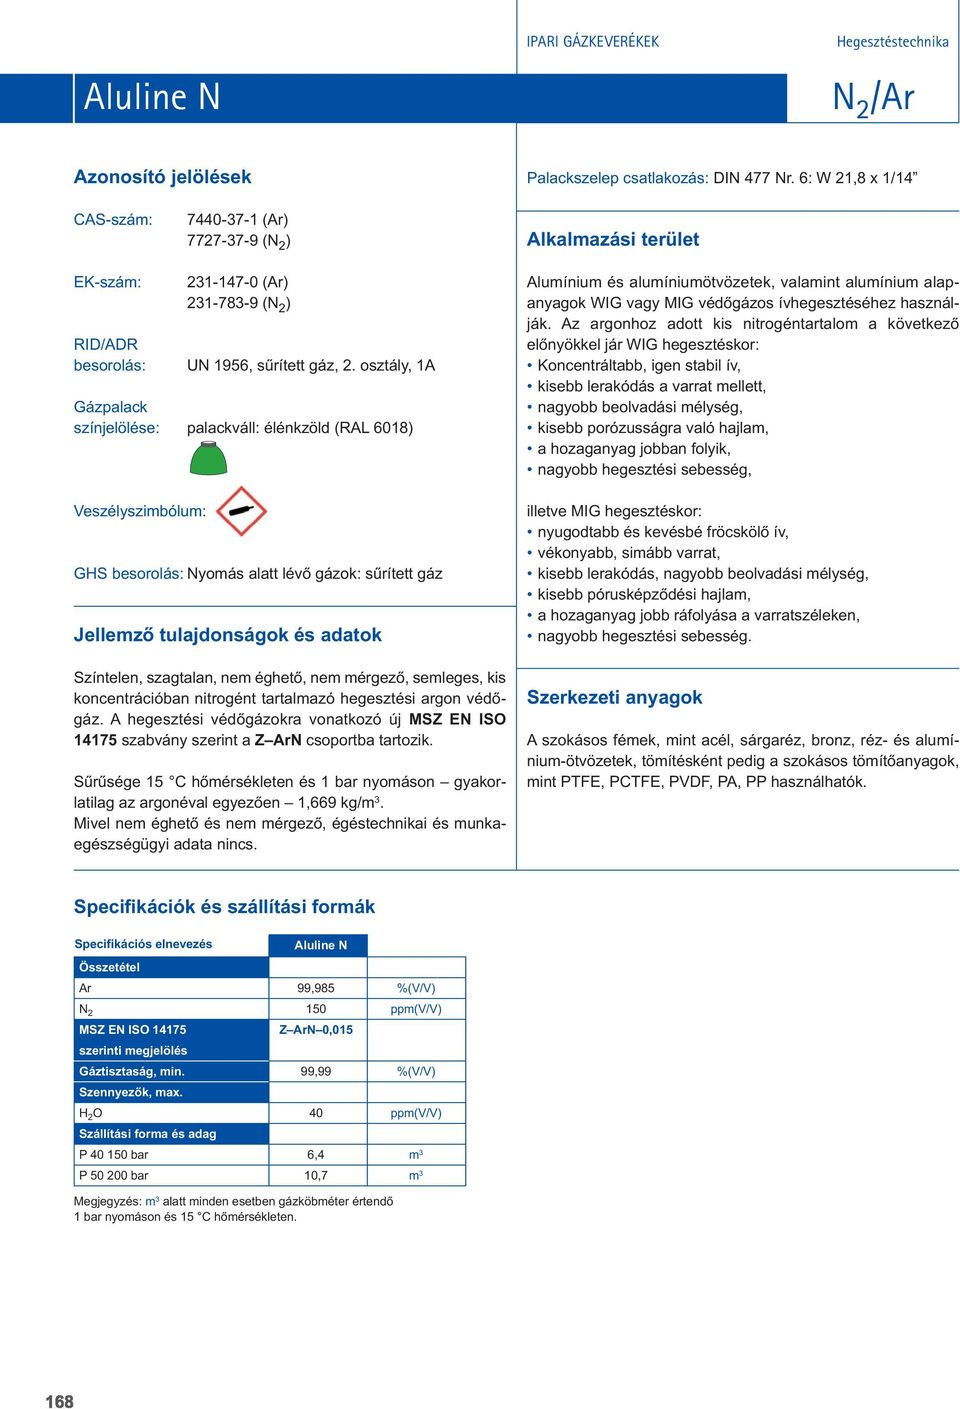 A hegesztési védôgázokra vonatkozó új MSZ EN ISO 14175 szabvány szerint a Z ArN csoportba tartozik. Sûrûsége 15 C hômérsékleten és 1 bar nyomáson gyakorlatilag az argonéval egyezôen 1,669 kg/m 3.